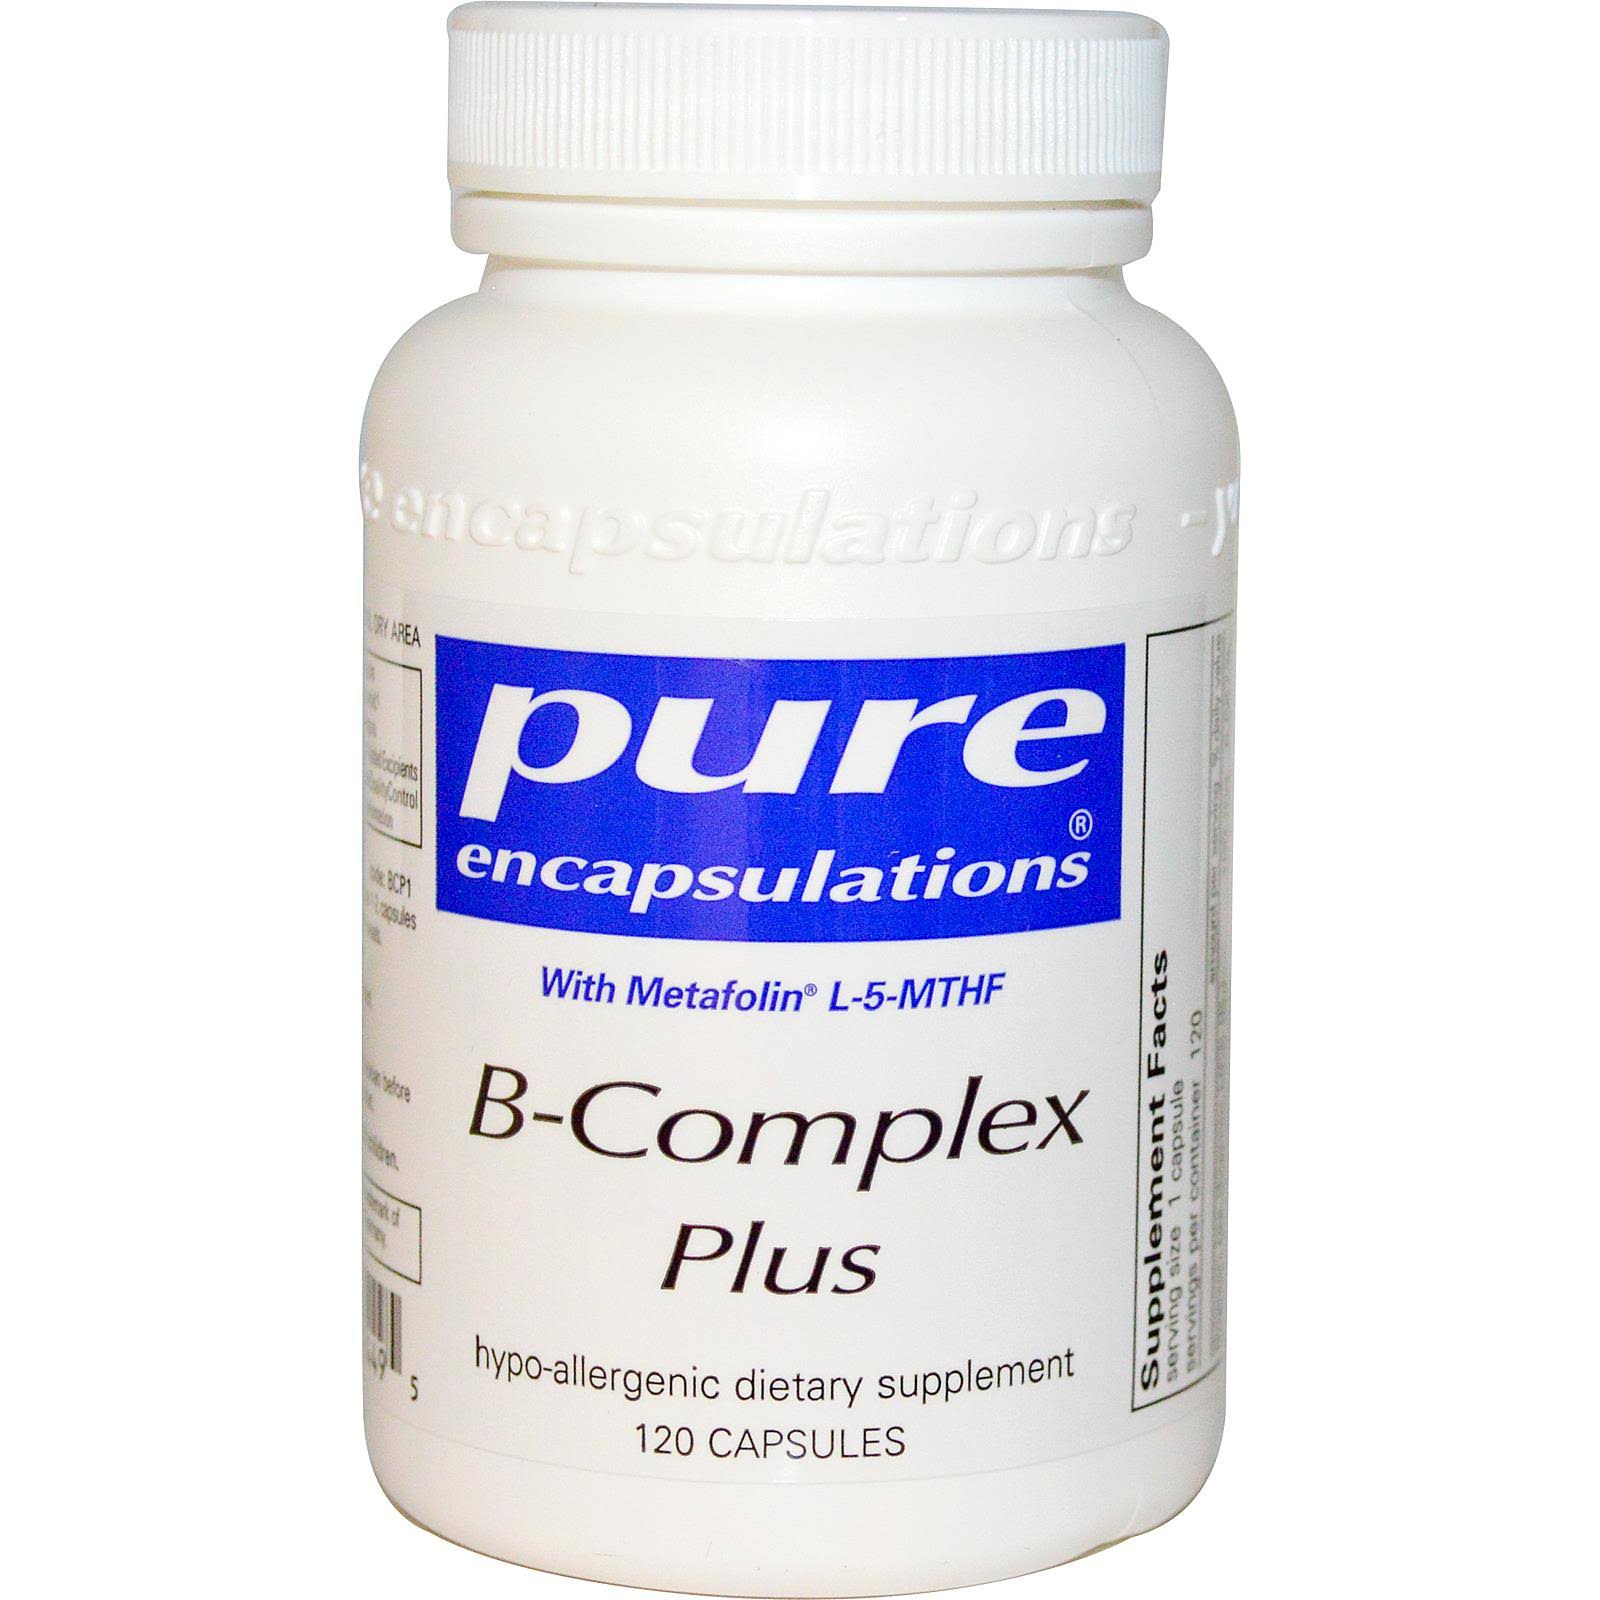 Pure Encapsulations B-complex Plus Supplement - 120 Vegetable Capsules